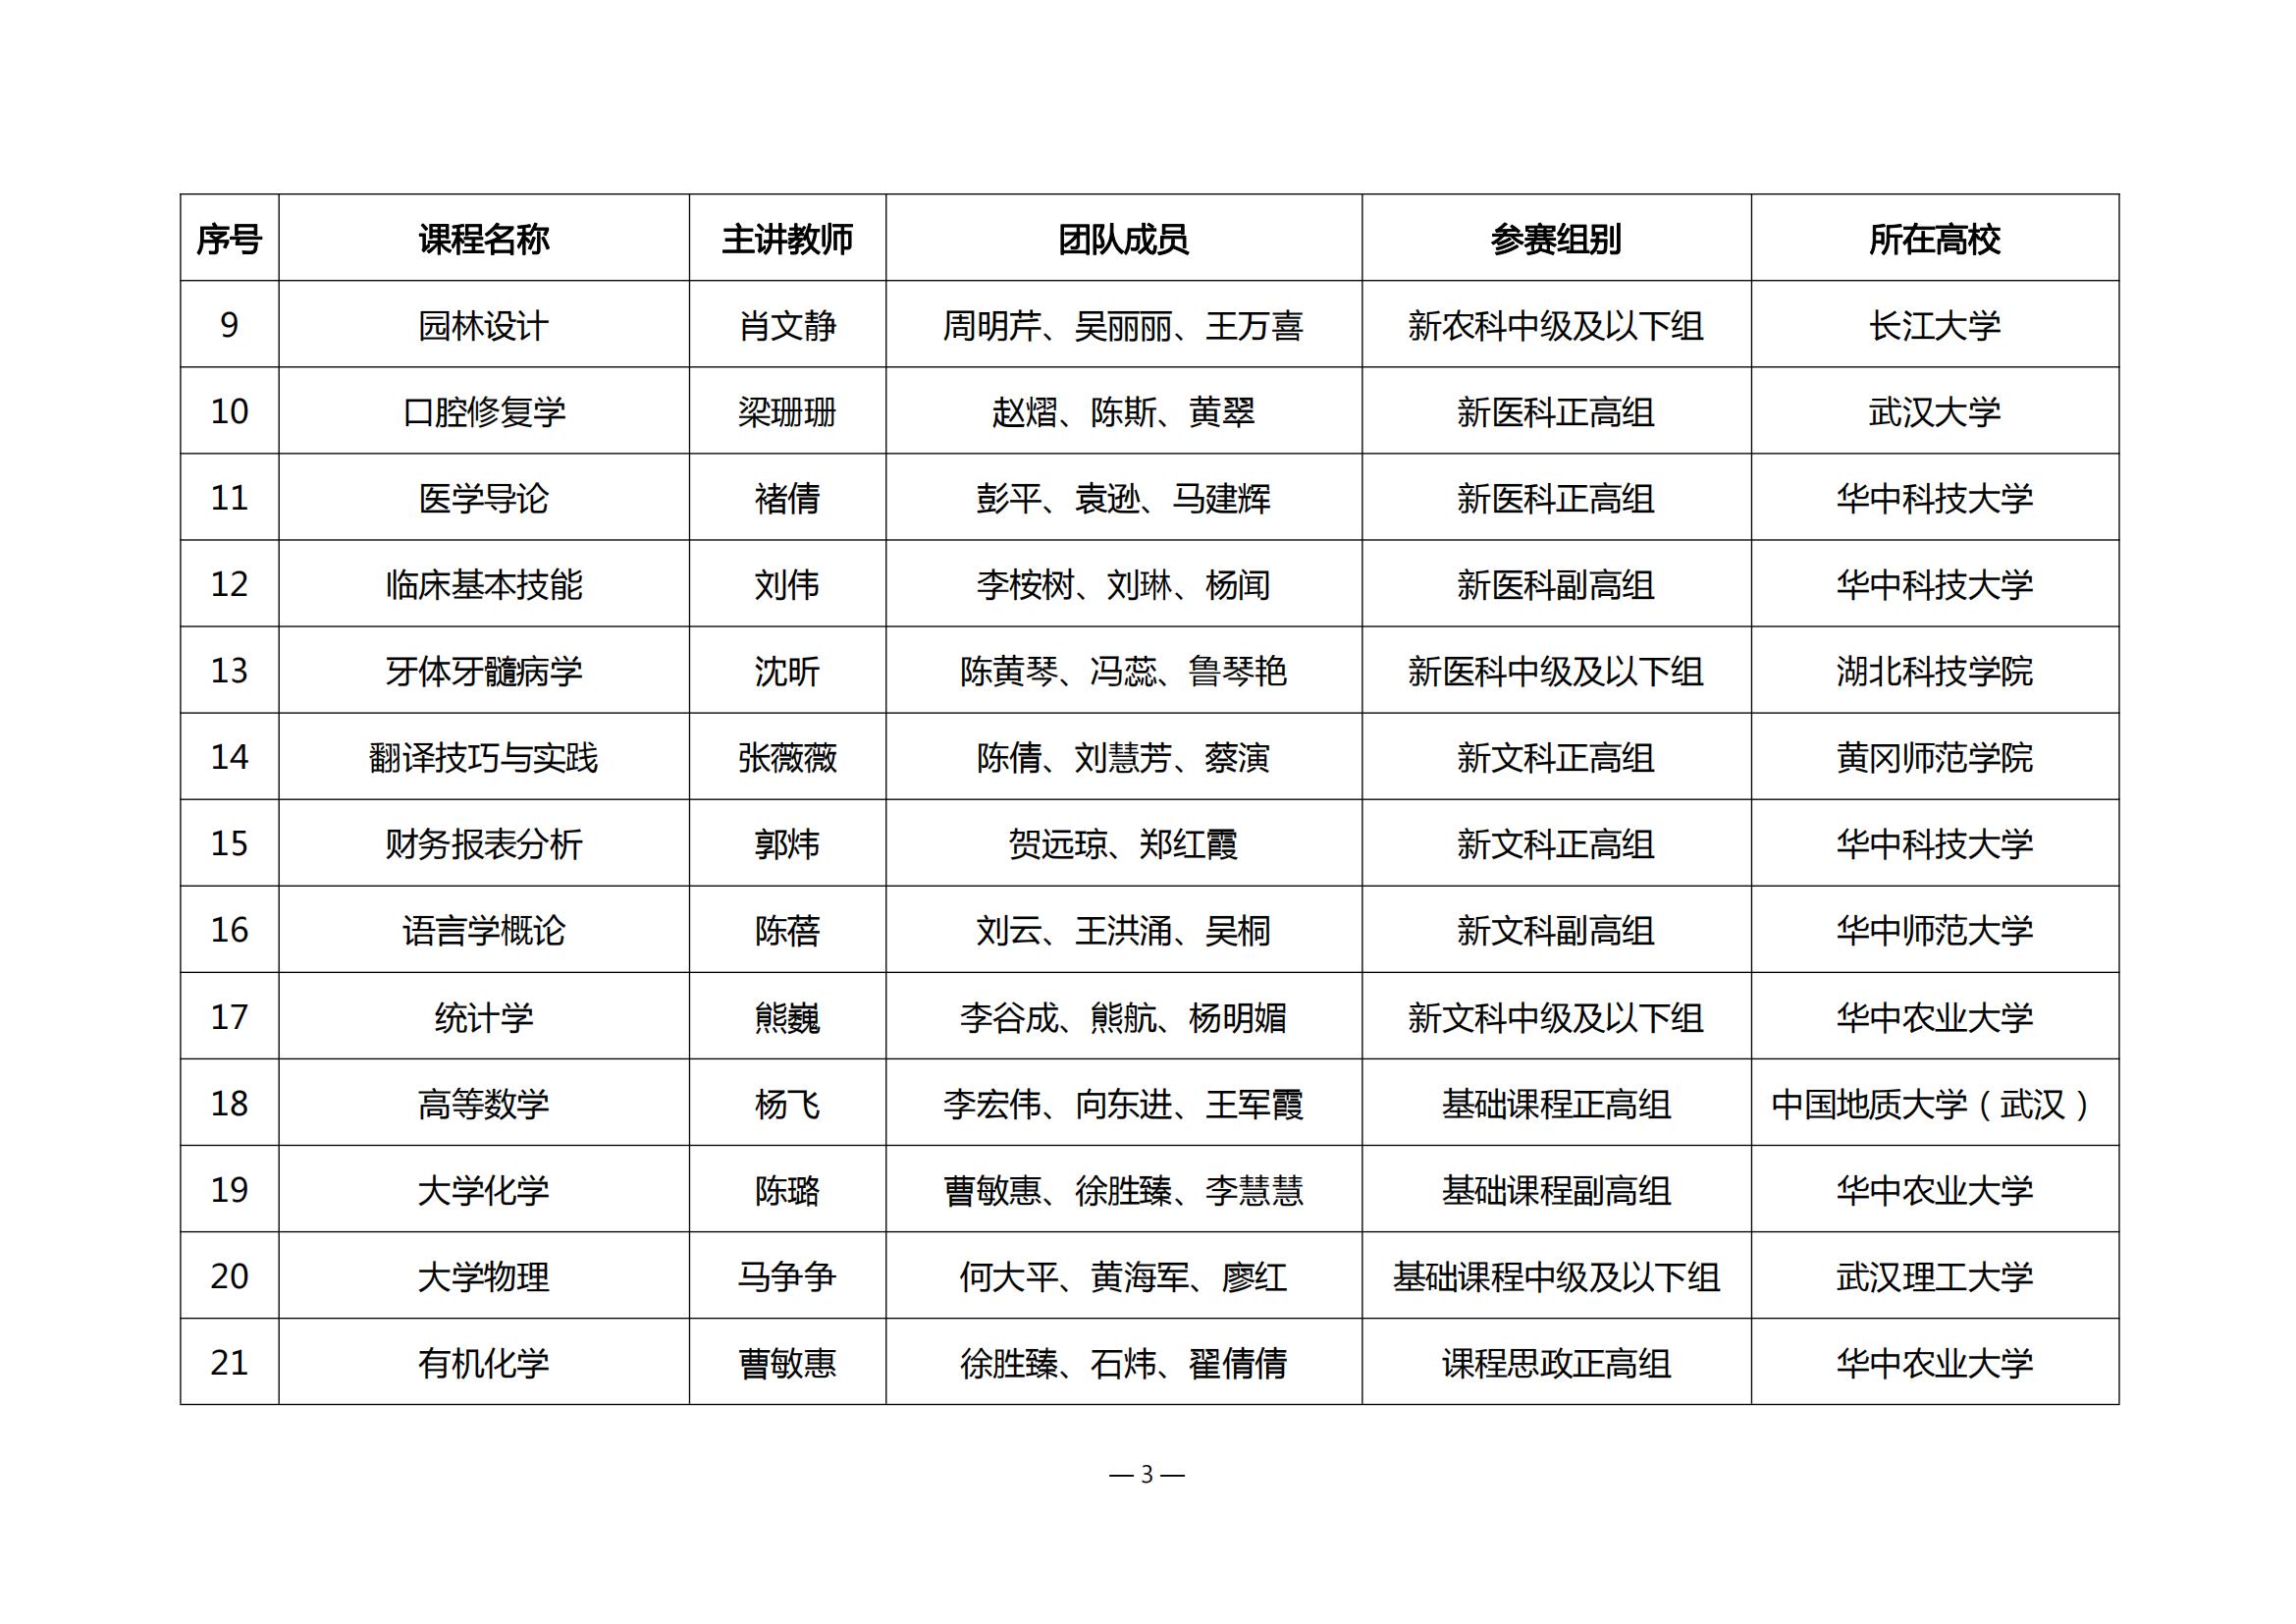 第四届湖北省高校教师教学创新大赛评审结果公示_02.jpg